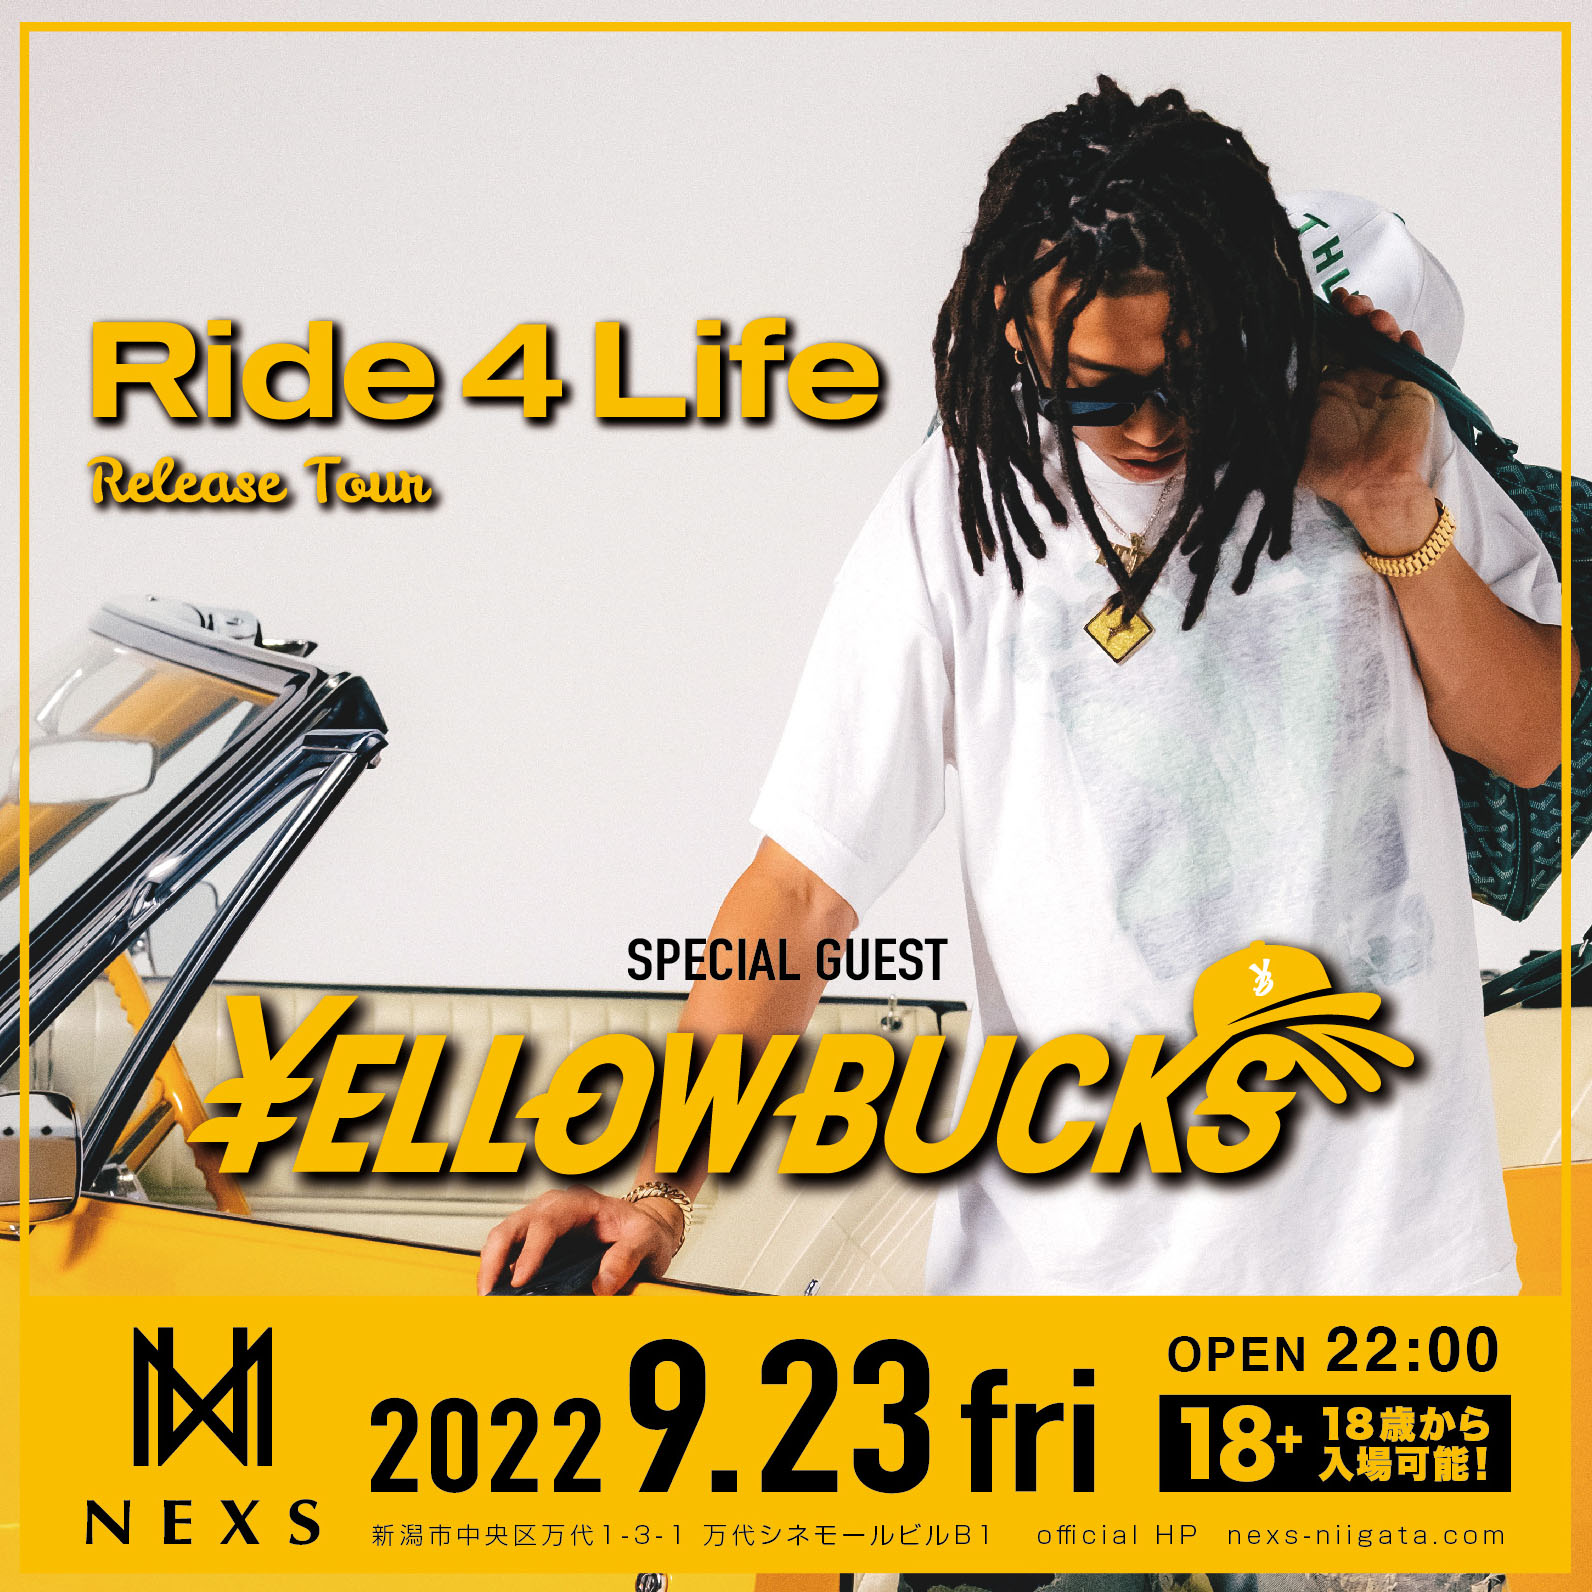 ellow Bucks Ride 4 Life Release Party – NEXS NIIGATA